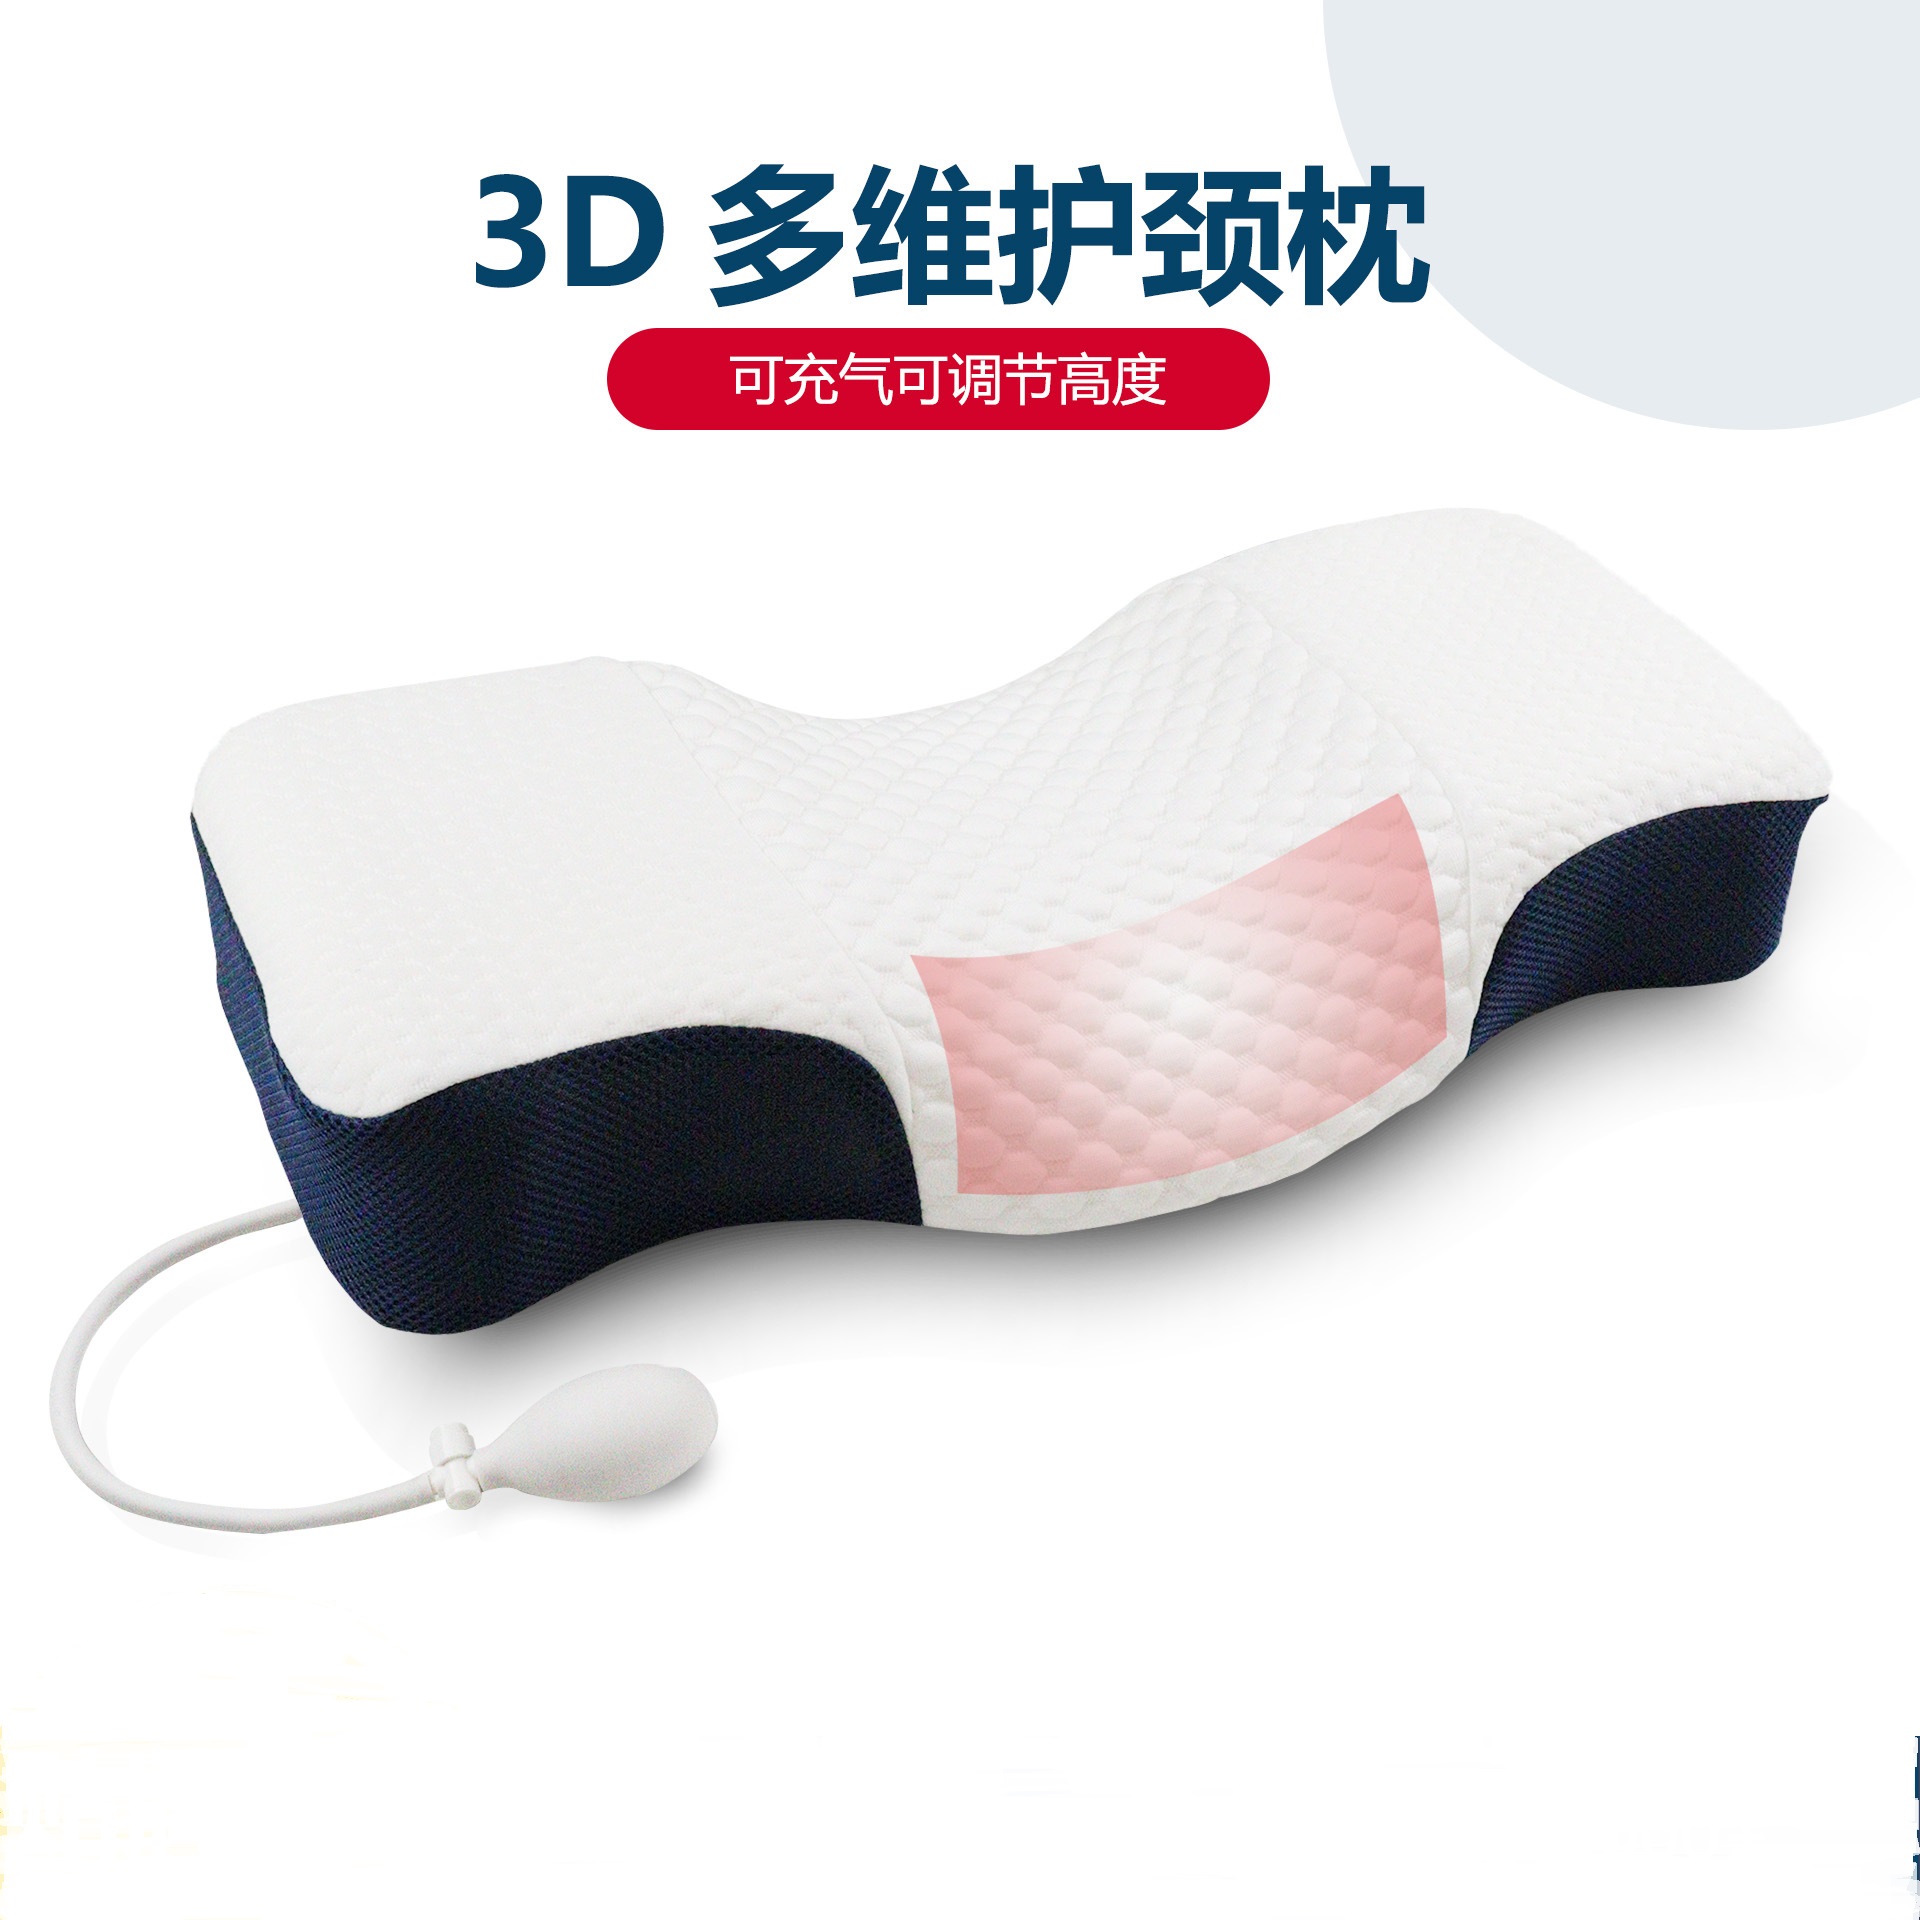 3D多维护颈枕太空记忆棉枕头芯睡觉可充气调节高低枕助睡眠颈椎枕